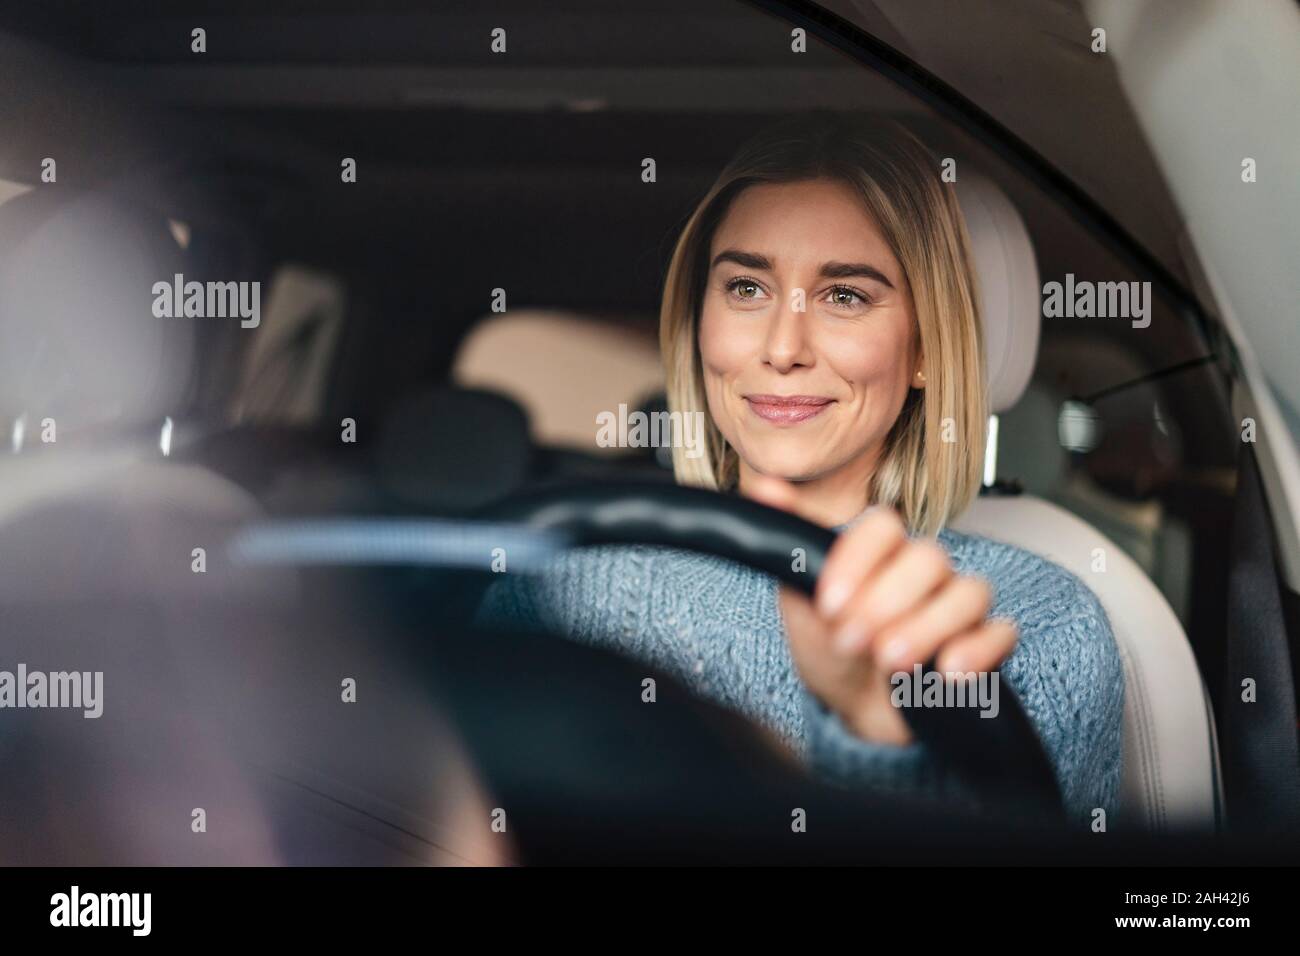 Ritratto di sorridente giovane donna alla guida di una vettura Foto Stock